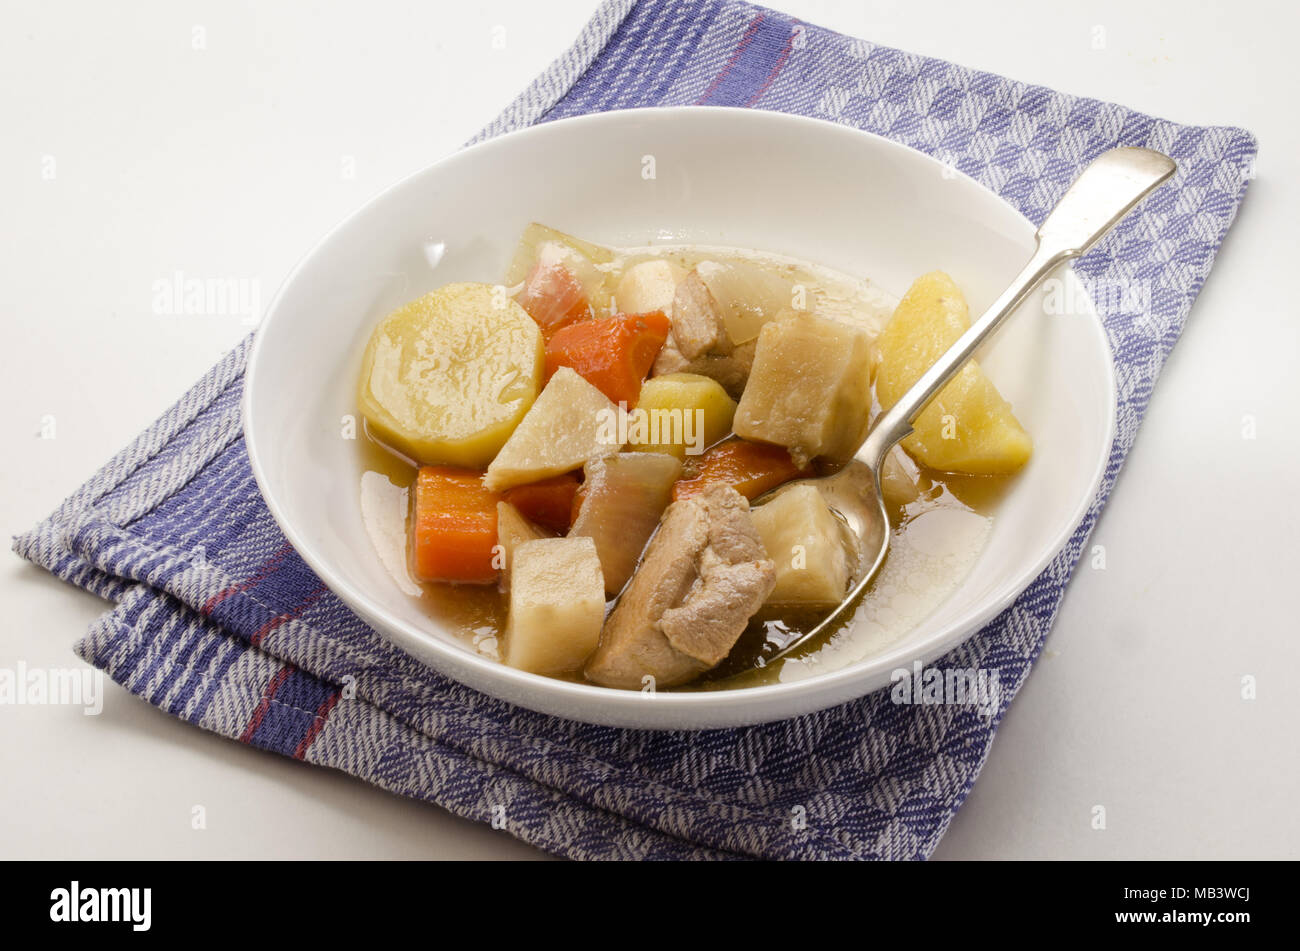 Clásico estofado irlandés con una cuchara y un plato hondo con vegetales growen inicio Foto de stock